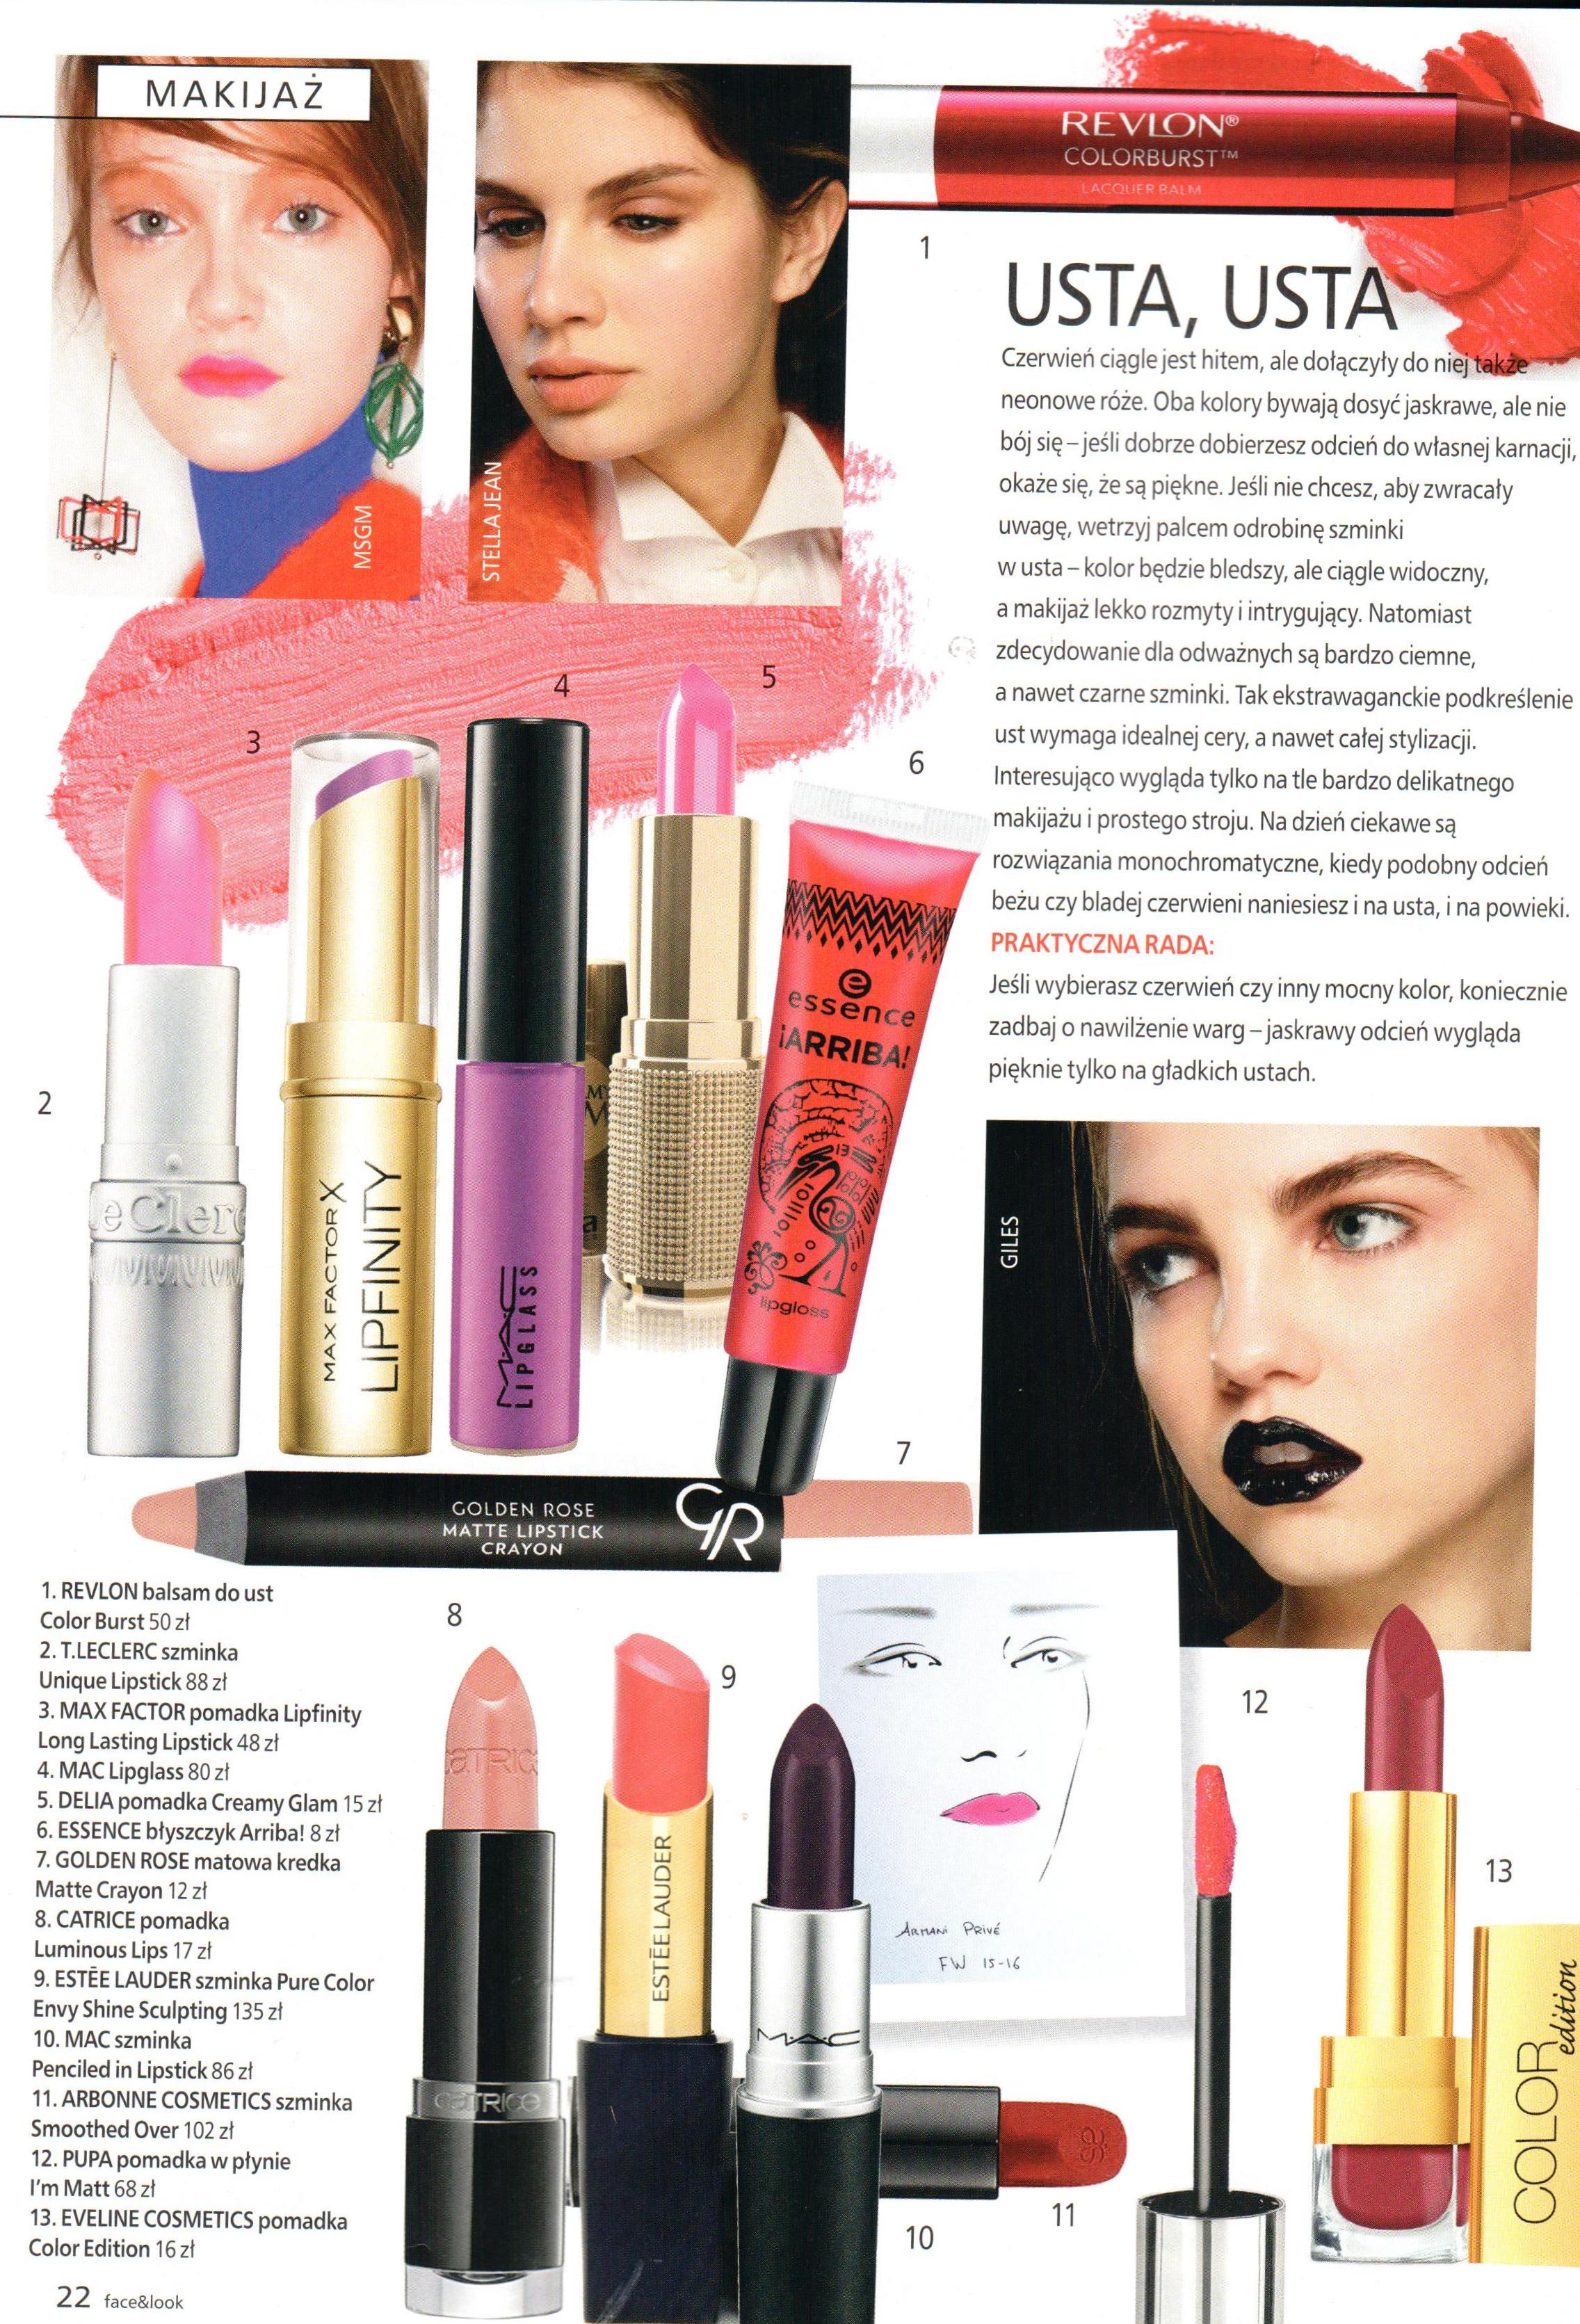 2015.09-10 Face&Look_T.LECLEERC Unique Lipstick